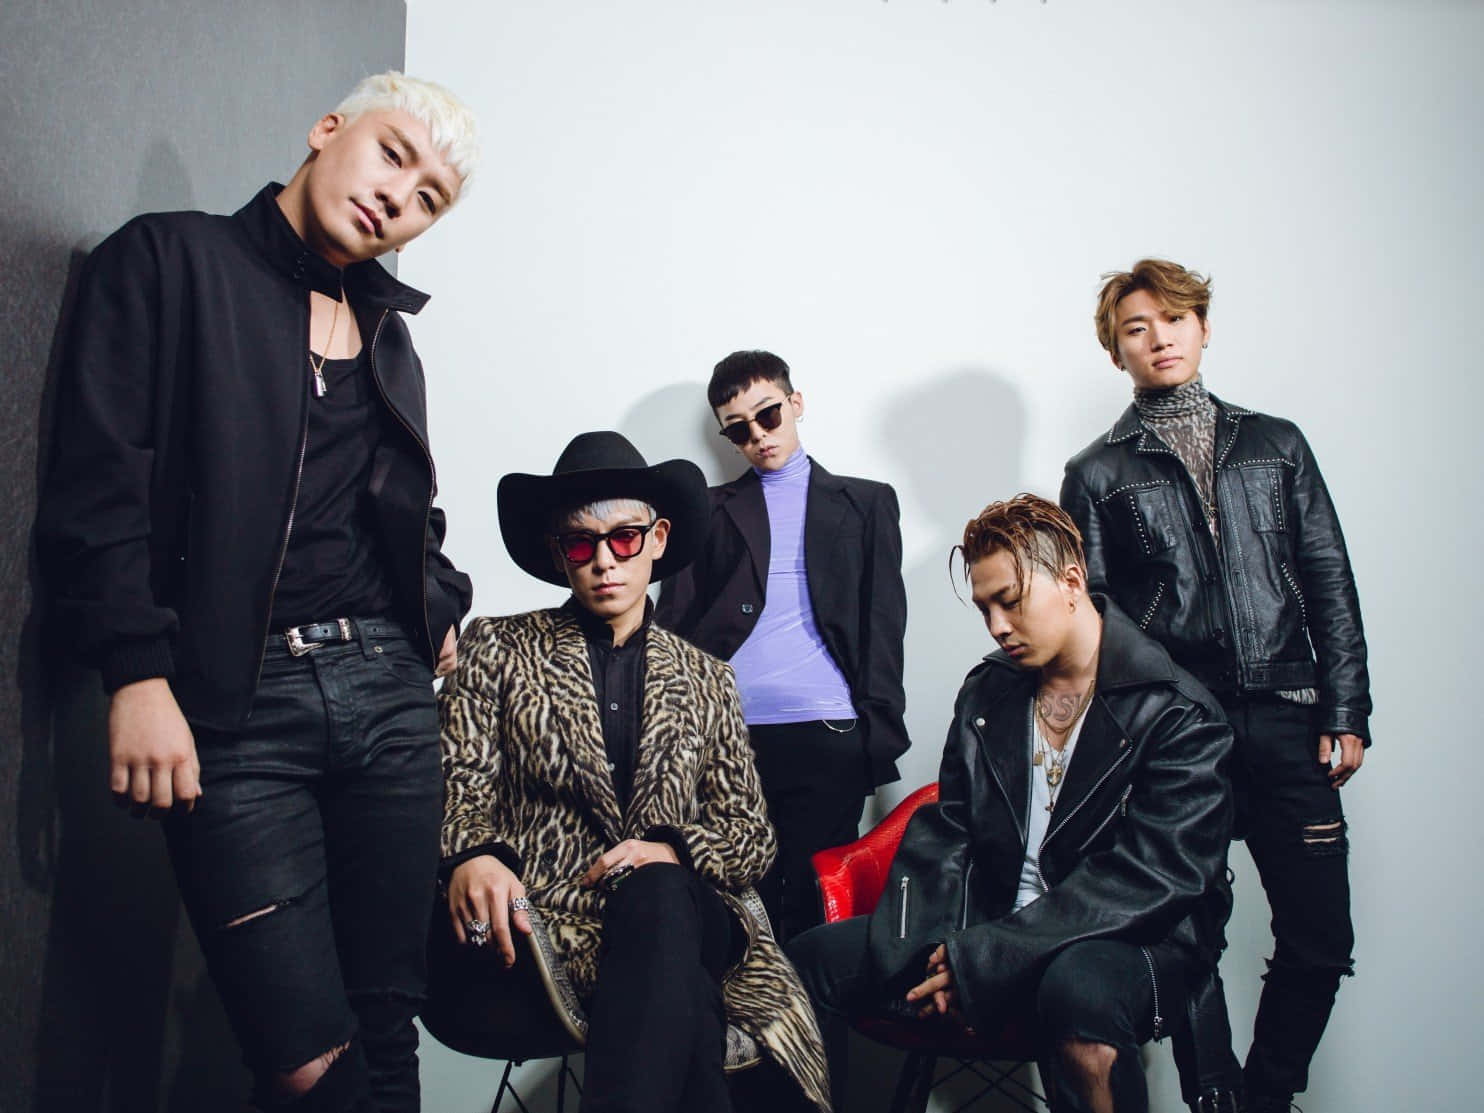 4medlemmer Af Bigbang - G-dragon, T.o.p., Taeyang Og Daesung